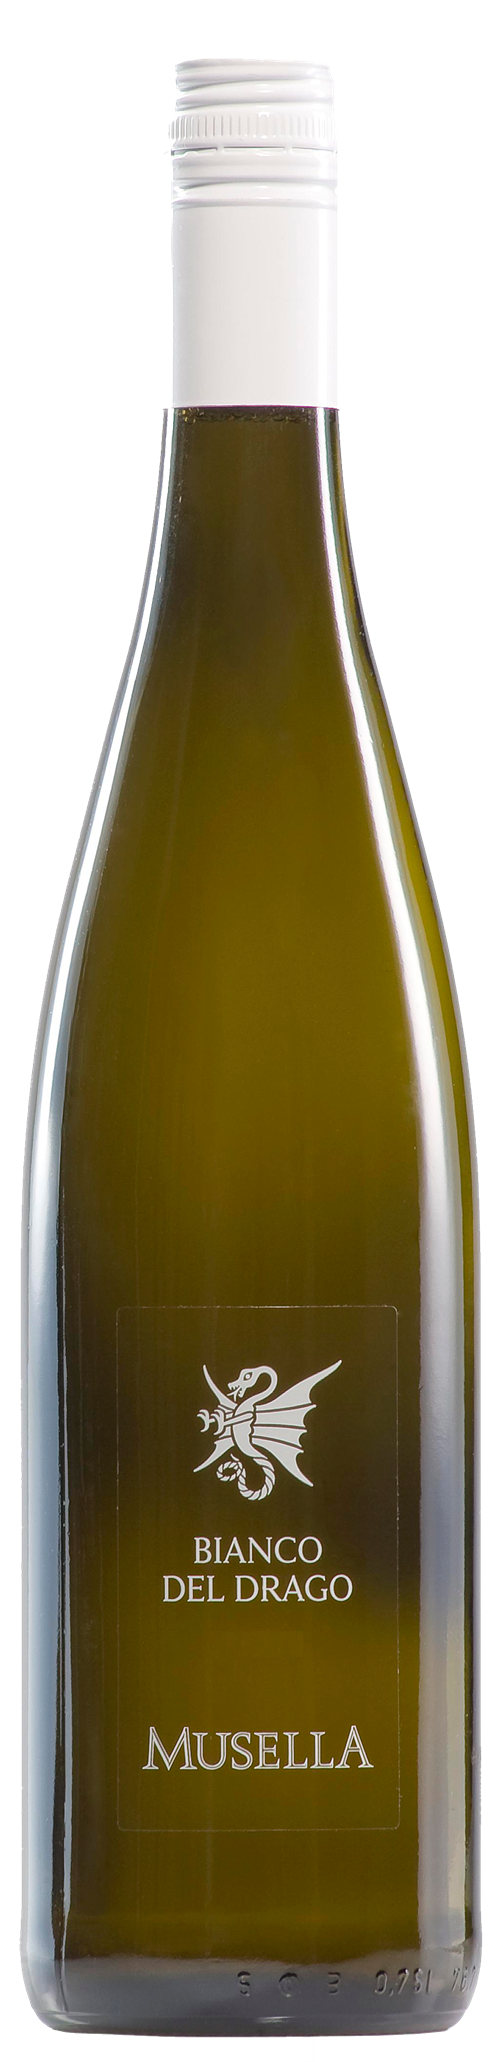 Bottle shot of 2013 Bianco del Drago